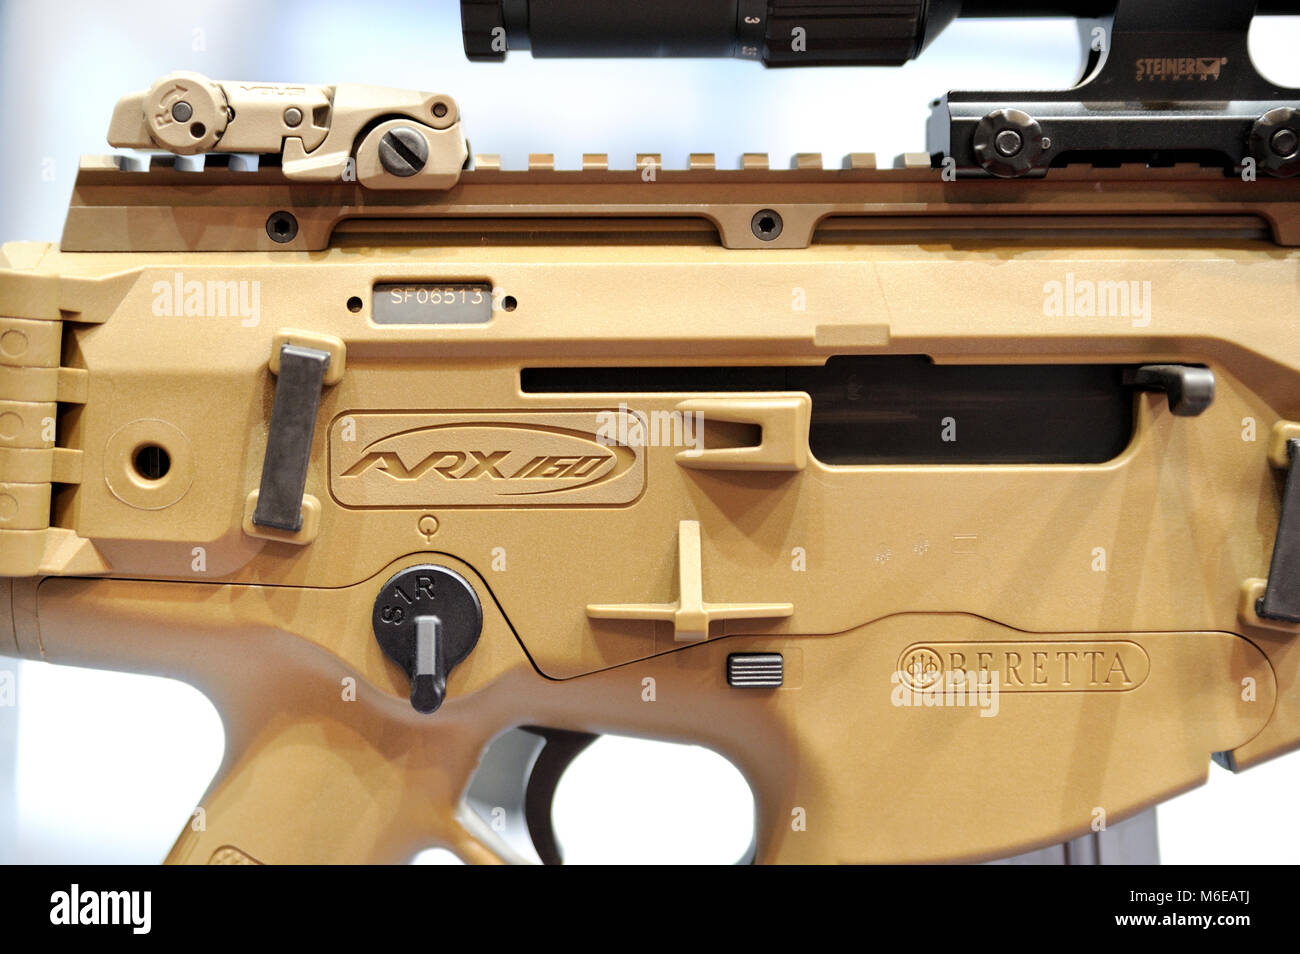 Beretta Assault Rifle desert tan ARX160 Stock Photo